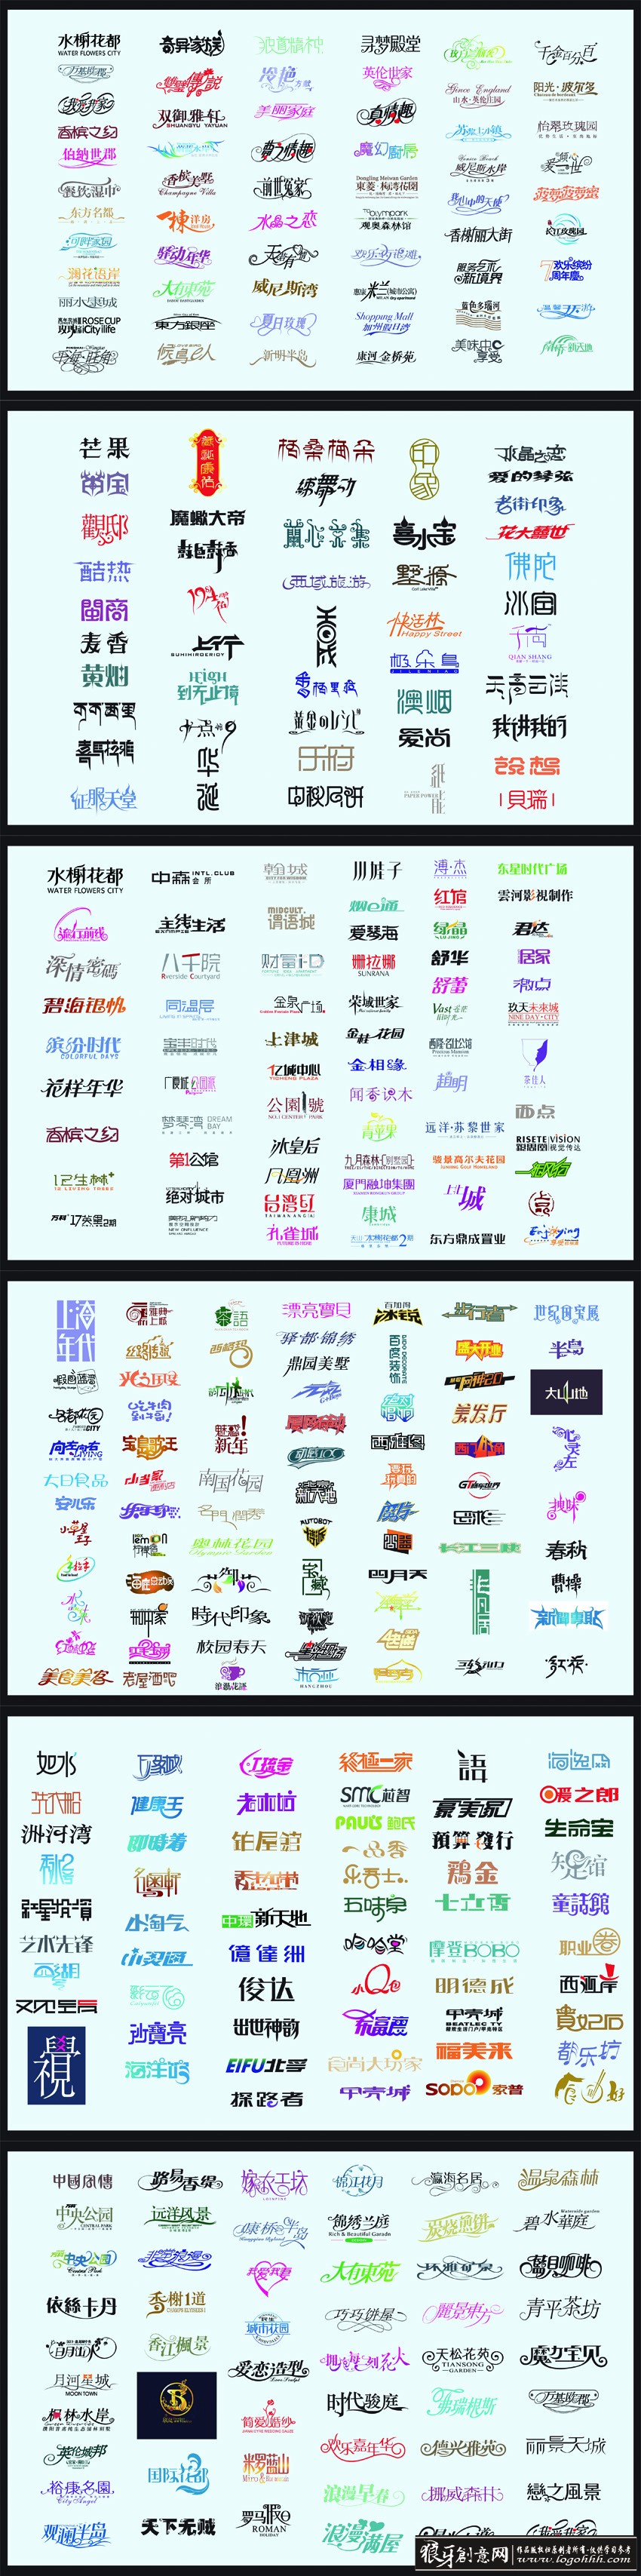 中文字体 上千种矢量字体设计下载大全 矢量字体素材下载 矢量文字素材 创意矢量字体 矢量字体网